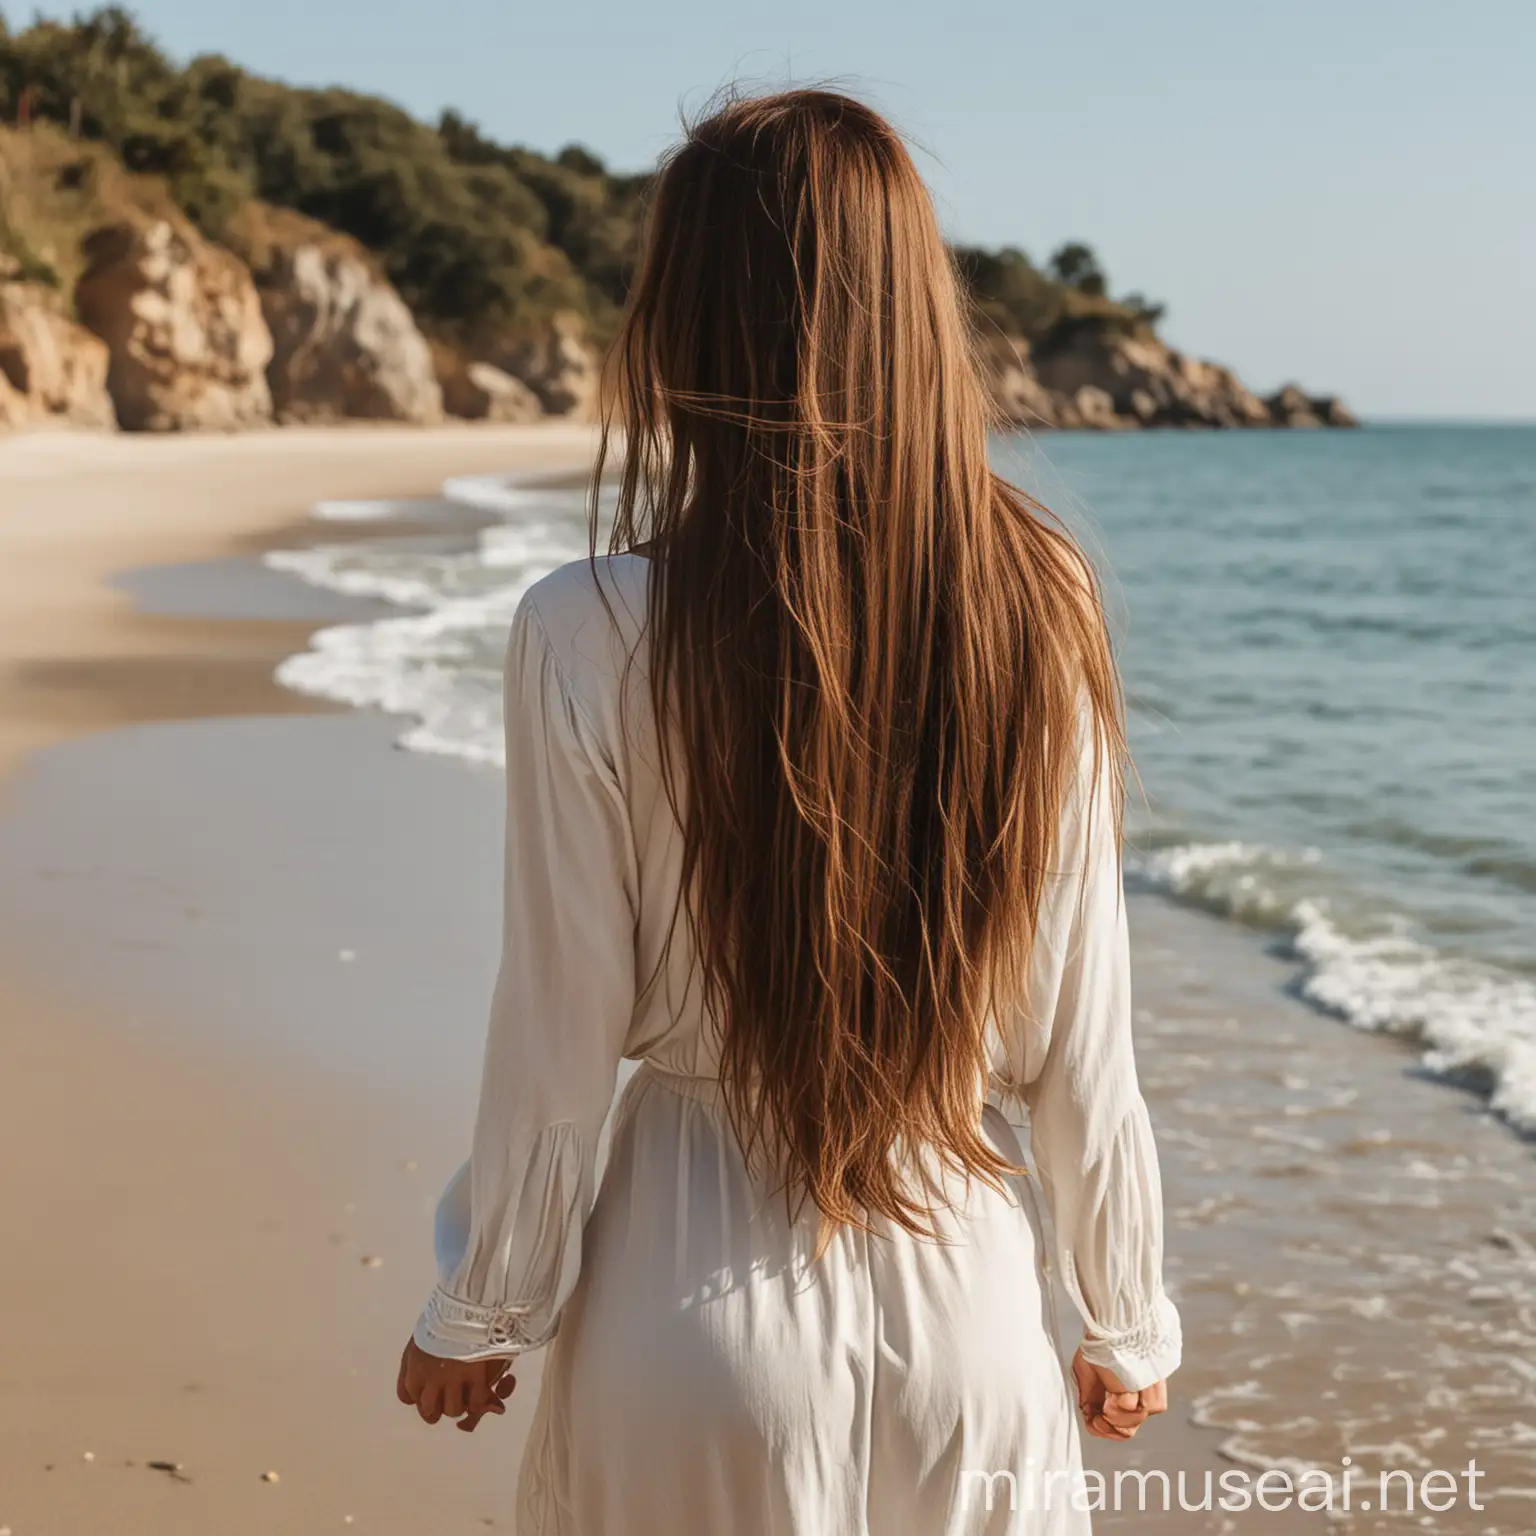 Frau mit langen braunen haaren am strand von hinten